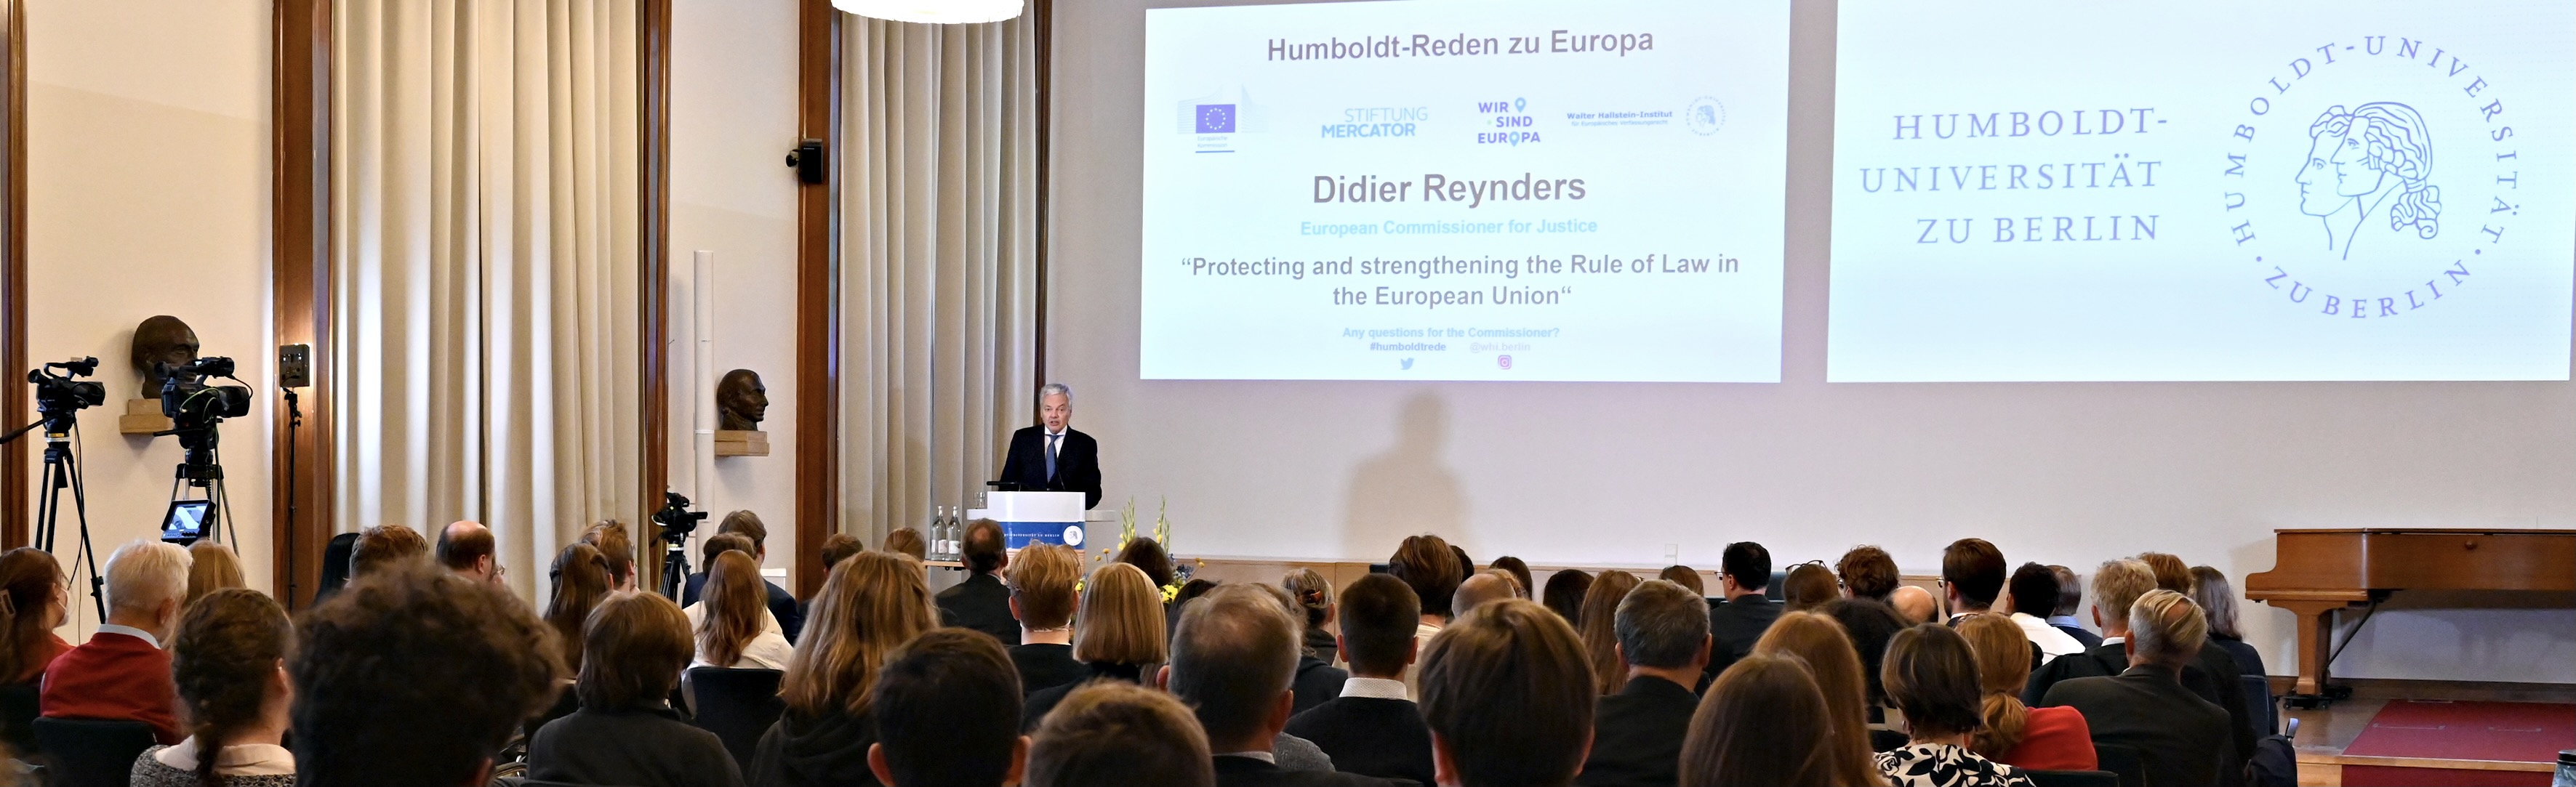 Humboldt-Rede zu Europa: Didier Reynders, EU-Kommissar für Justiz und Rechtsstaatlichkeit